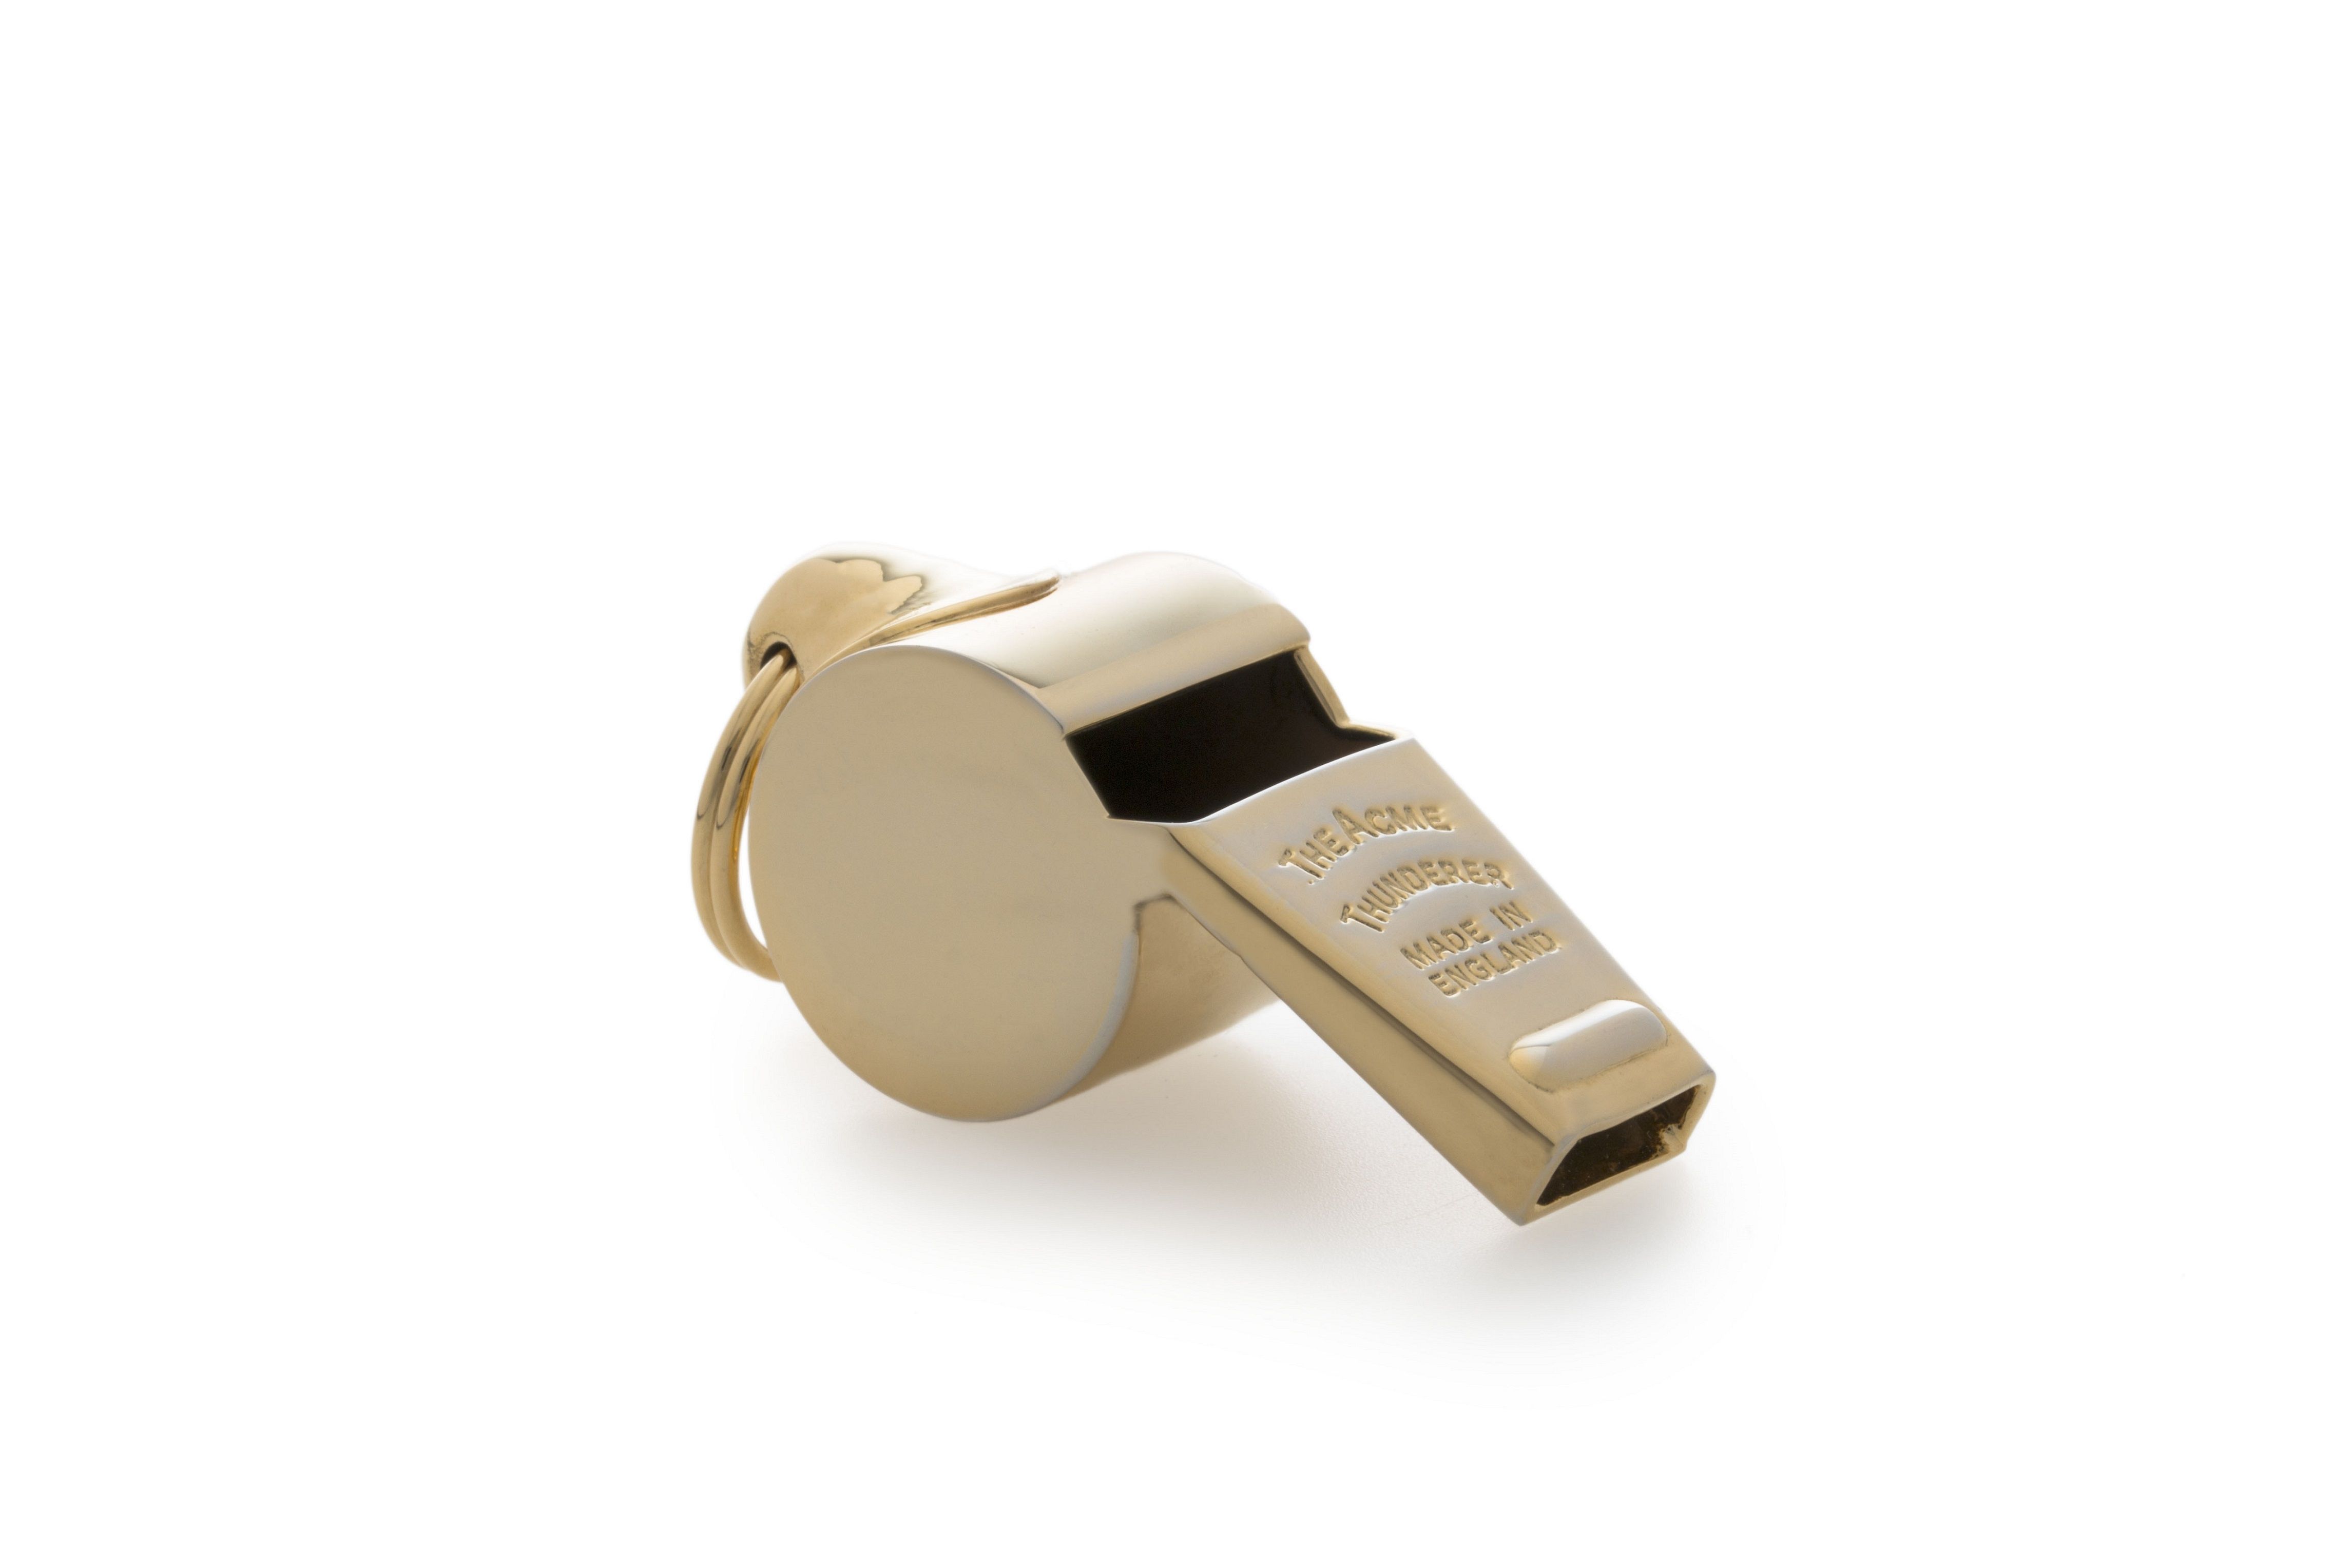 Small Acme Thunderer Brass Whistle (605)